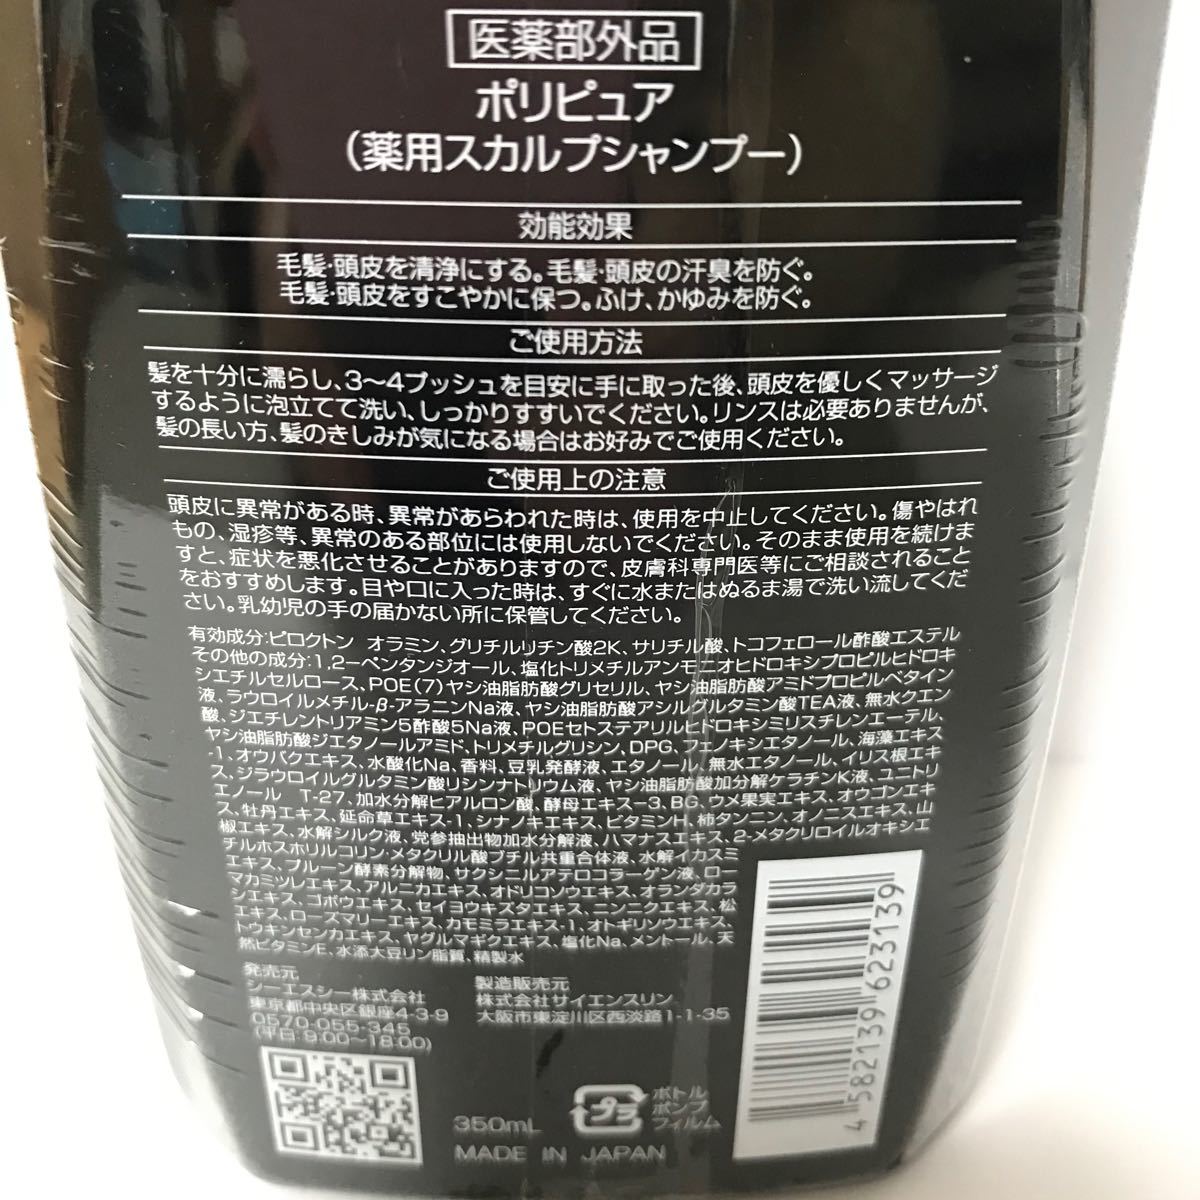 【新品未使用】シーエスシー ポリピュアEX 薬用スカルプシャンプー 2本セット